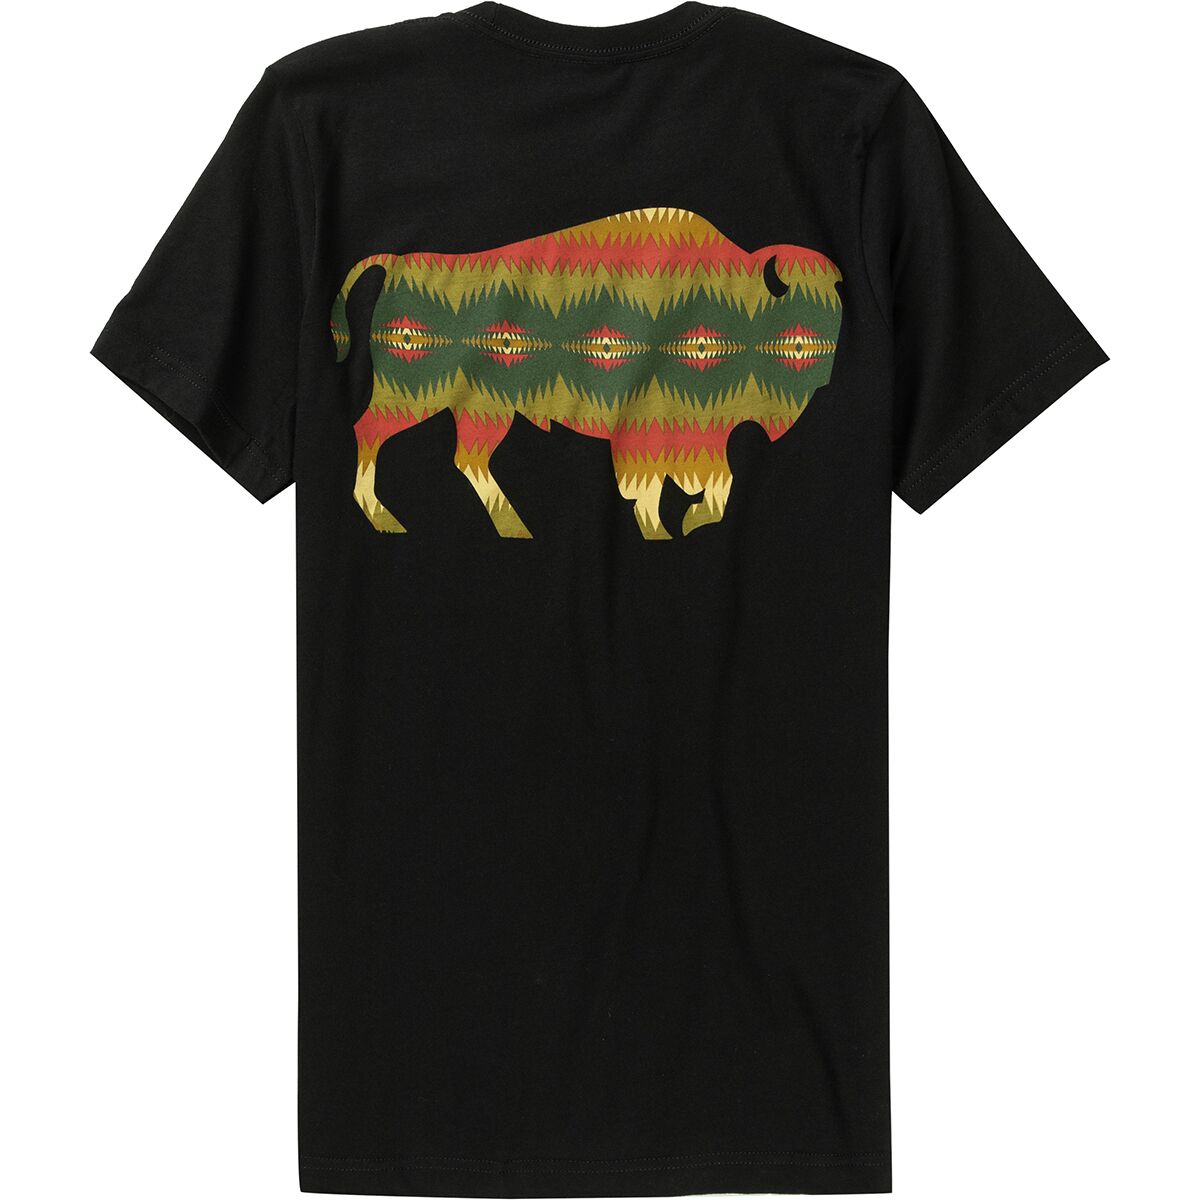 Pendleton Tye River Buffalo Graphic T-Shirt - Men's